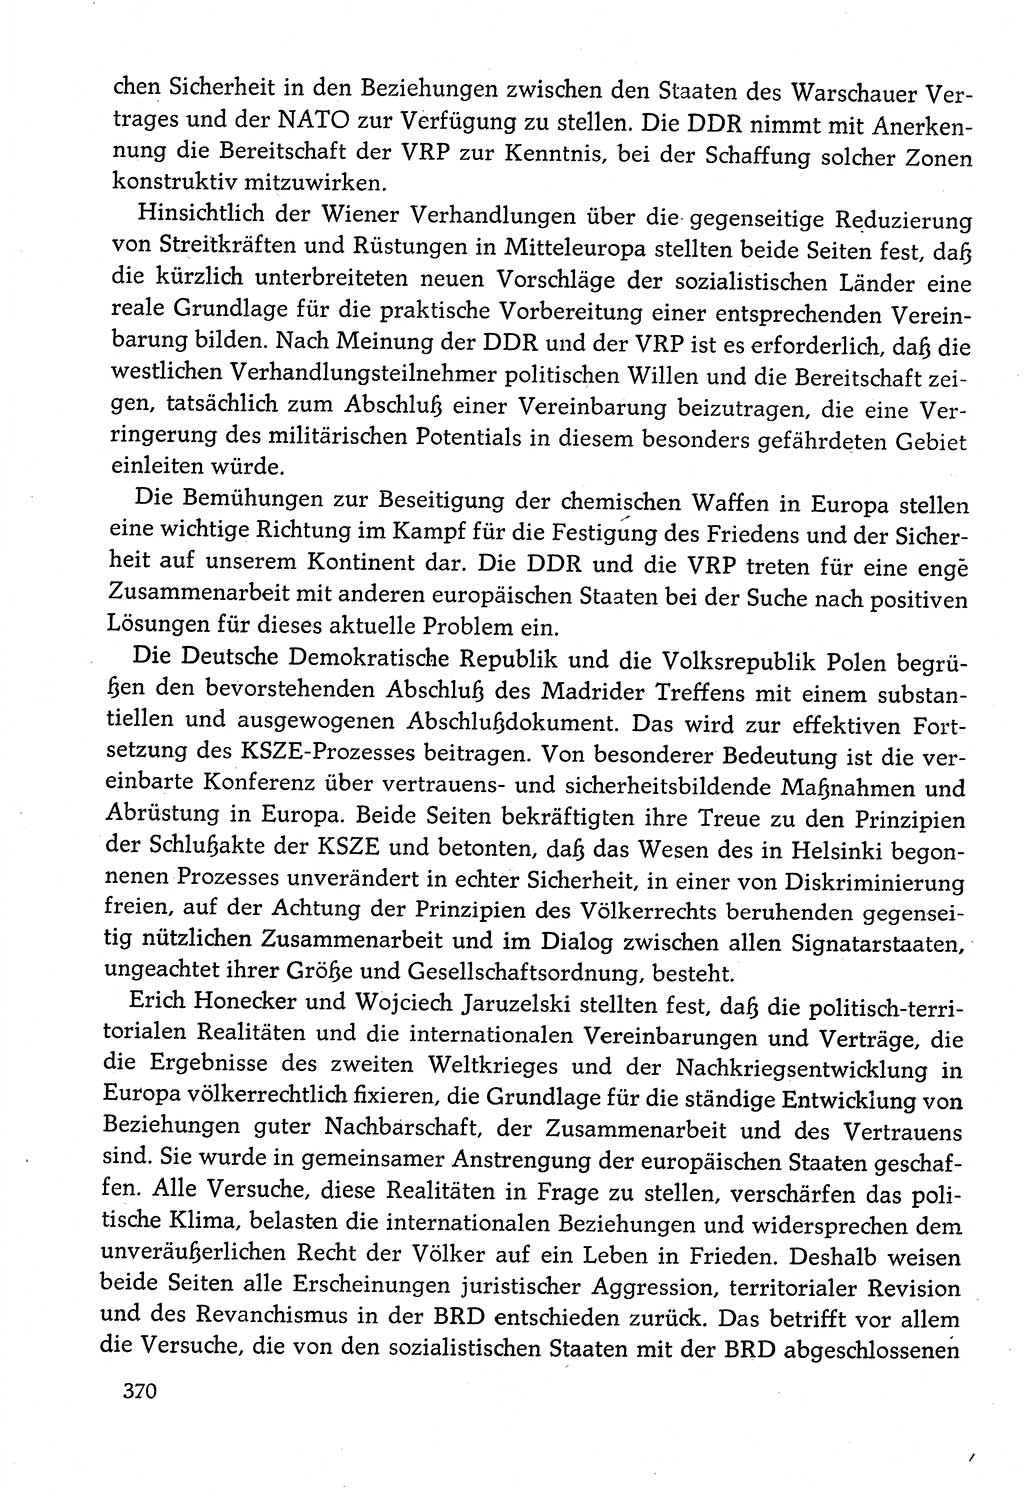 Dokumente der Sozialistischen Einheitspartei Deutschlands (SED) [Deutsche Demokratische Republik (DDR)] 1982-1983, Seite 370 (Dok. SED DDR 1982-1983, S. 370)